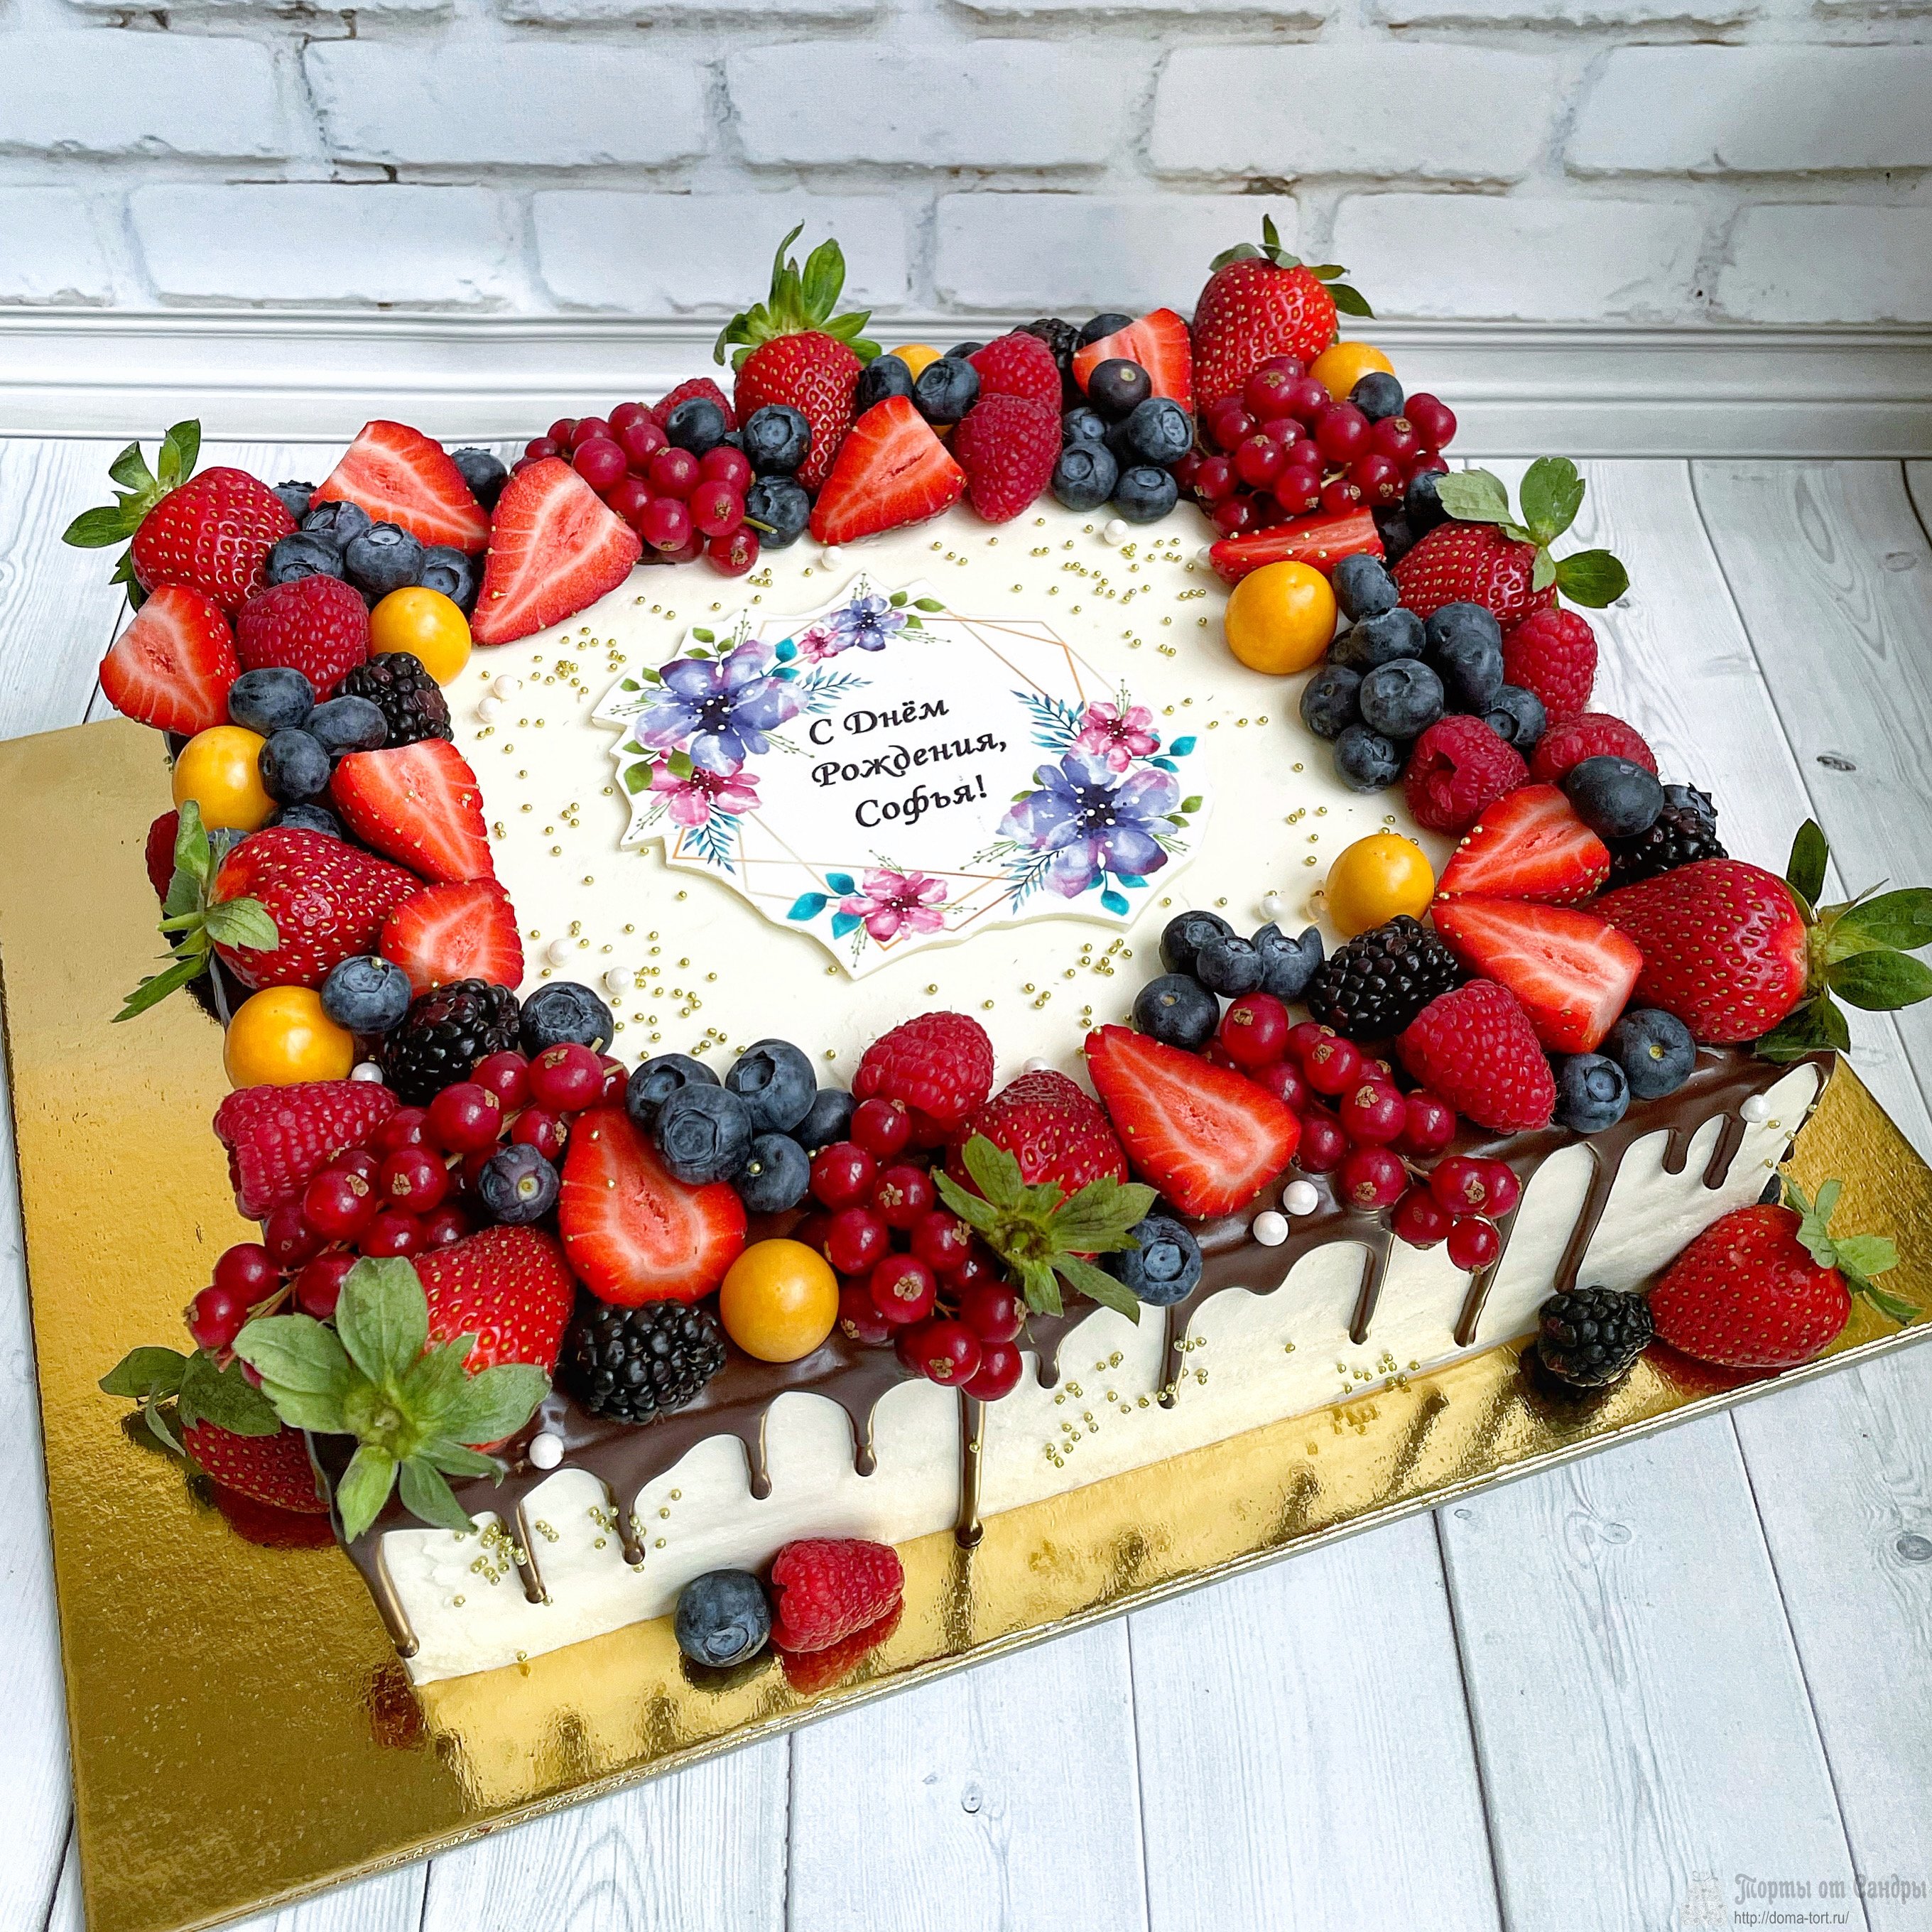 Праздничный торт - с подтеками шоколада, свежими ягодами и сахарной картинкой